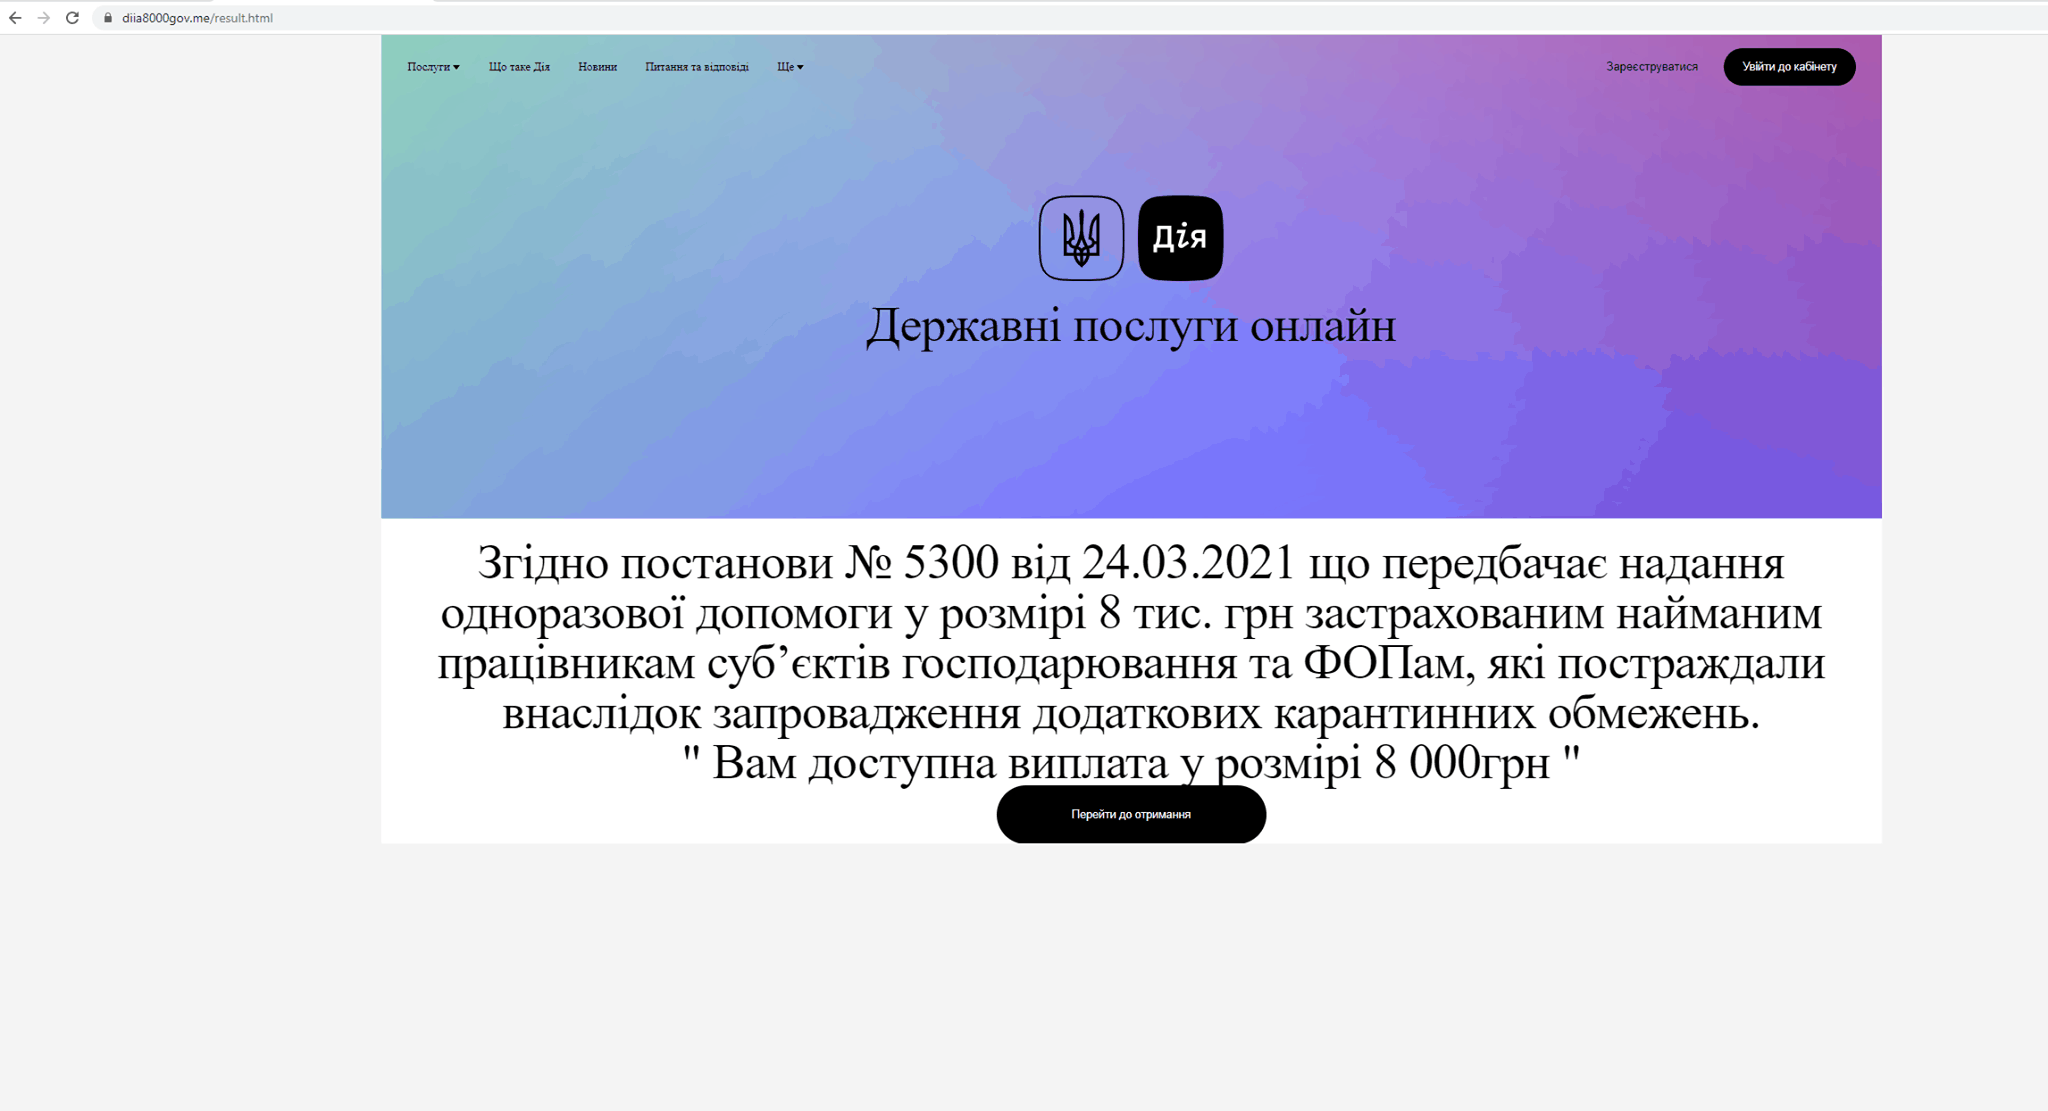 Фишинговый сайт-имитация «Дії» собирал ИНН и данные кредиток украинцев